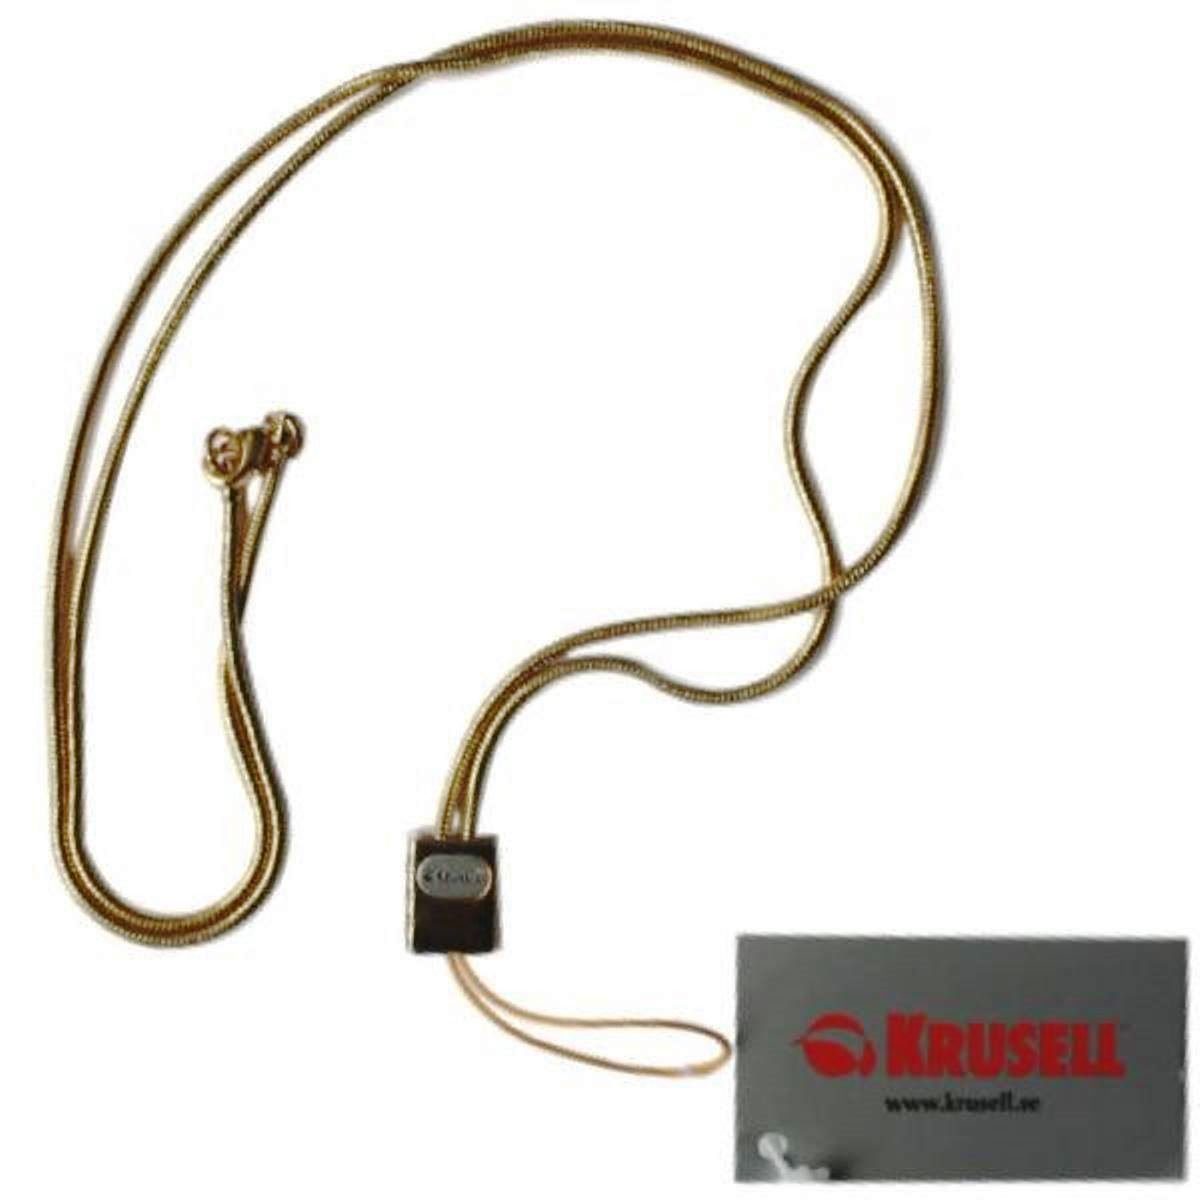 Krusell Handyhülle Neck-Strap Hals-Kette Trage-Band Schlaufe, passend für Handy, MP3-Player, Audio-Player, Kamera, etc.